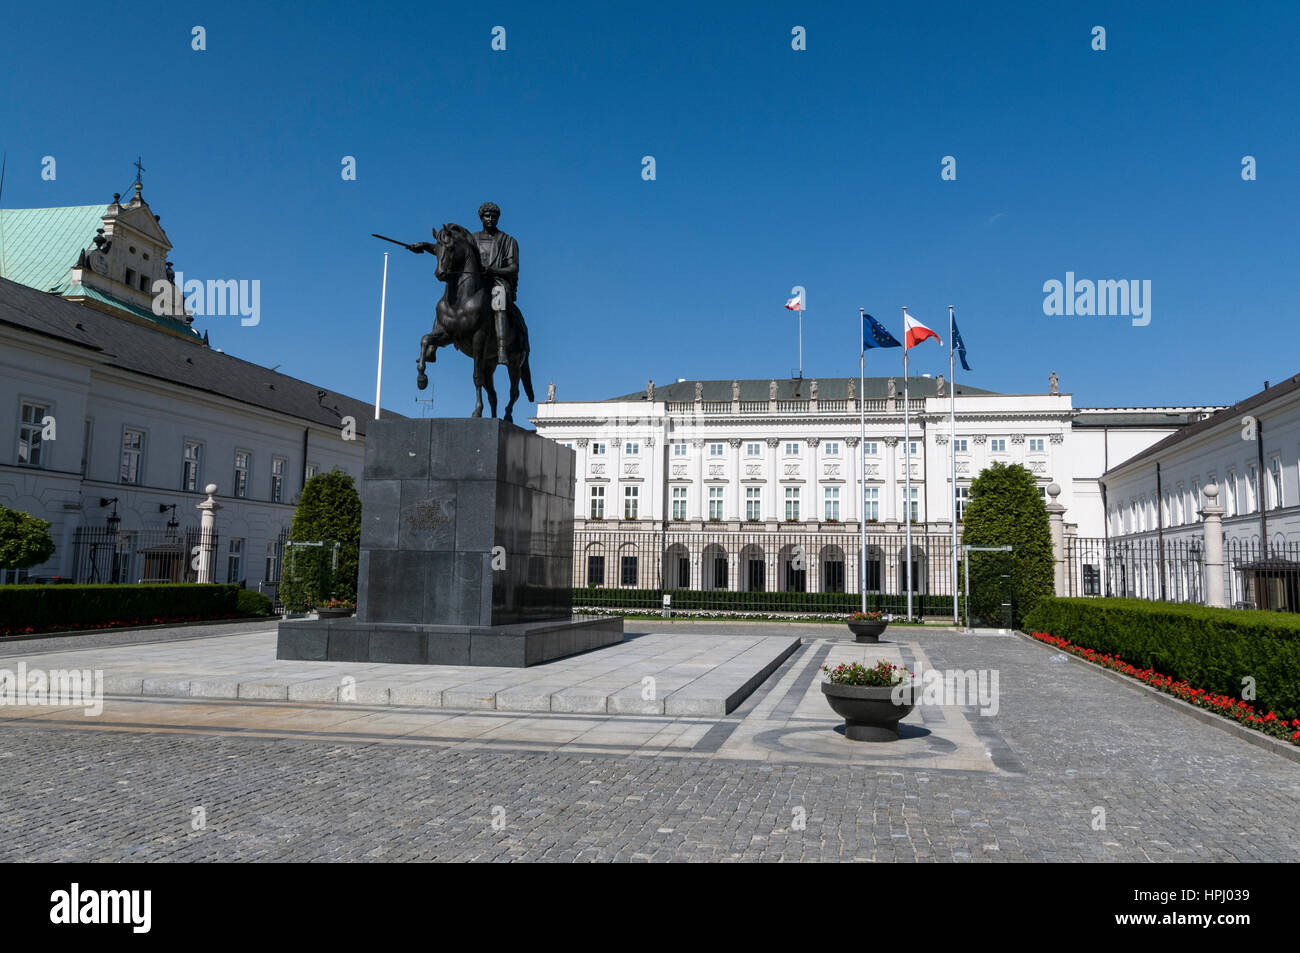 Palac Prezydeck - Presidentail Palace in Krakowskie Przedmiescie,  Warsaw, Poland Stock Photo